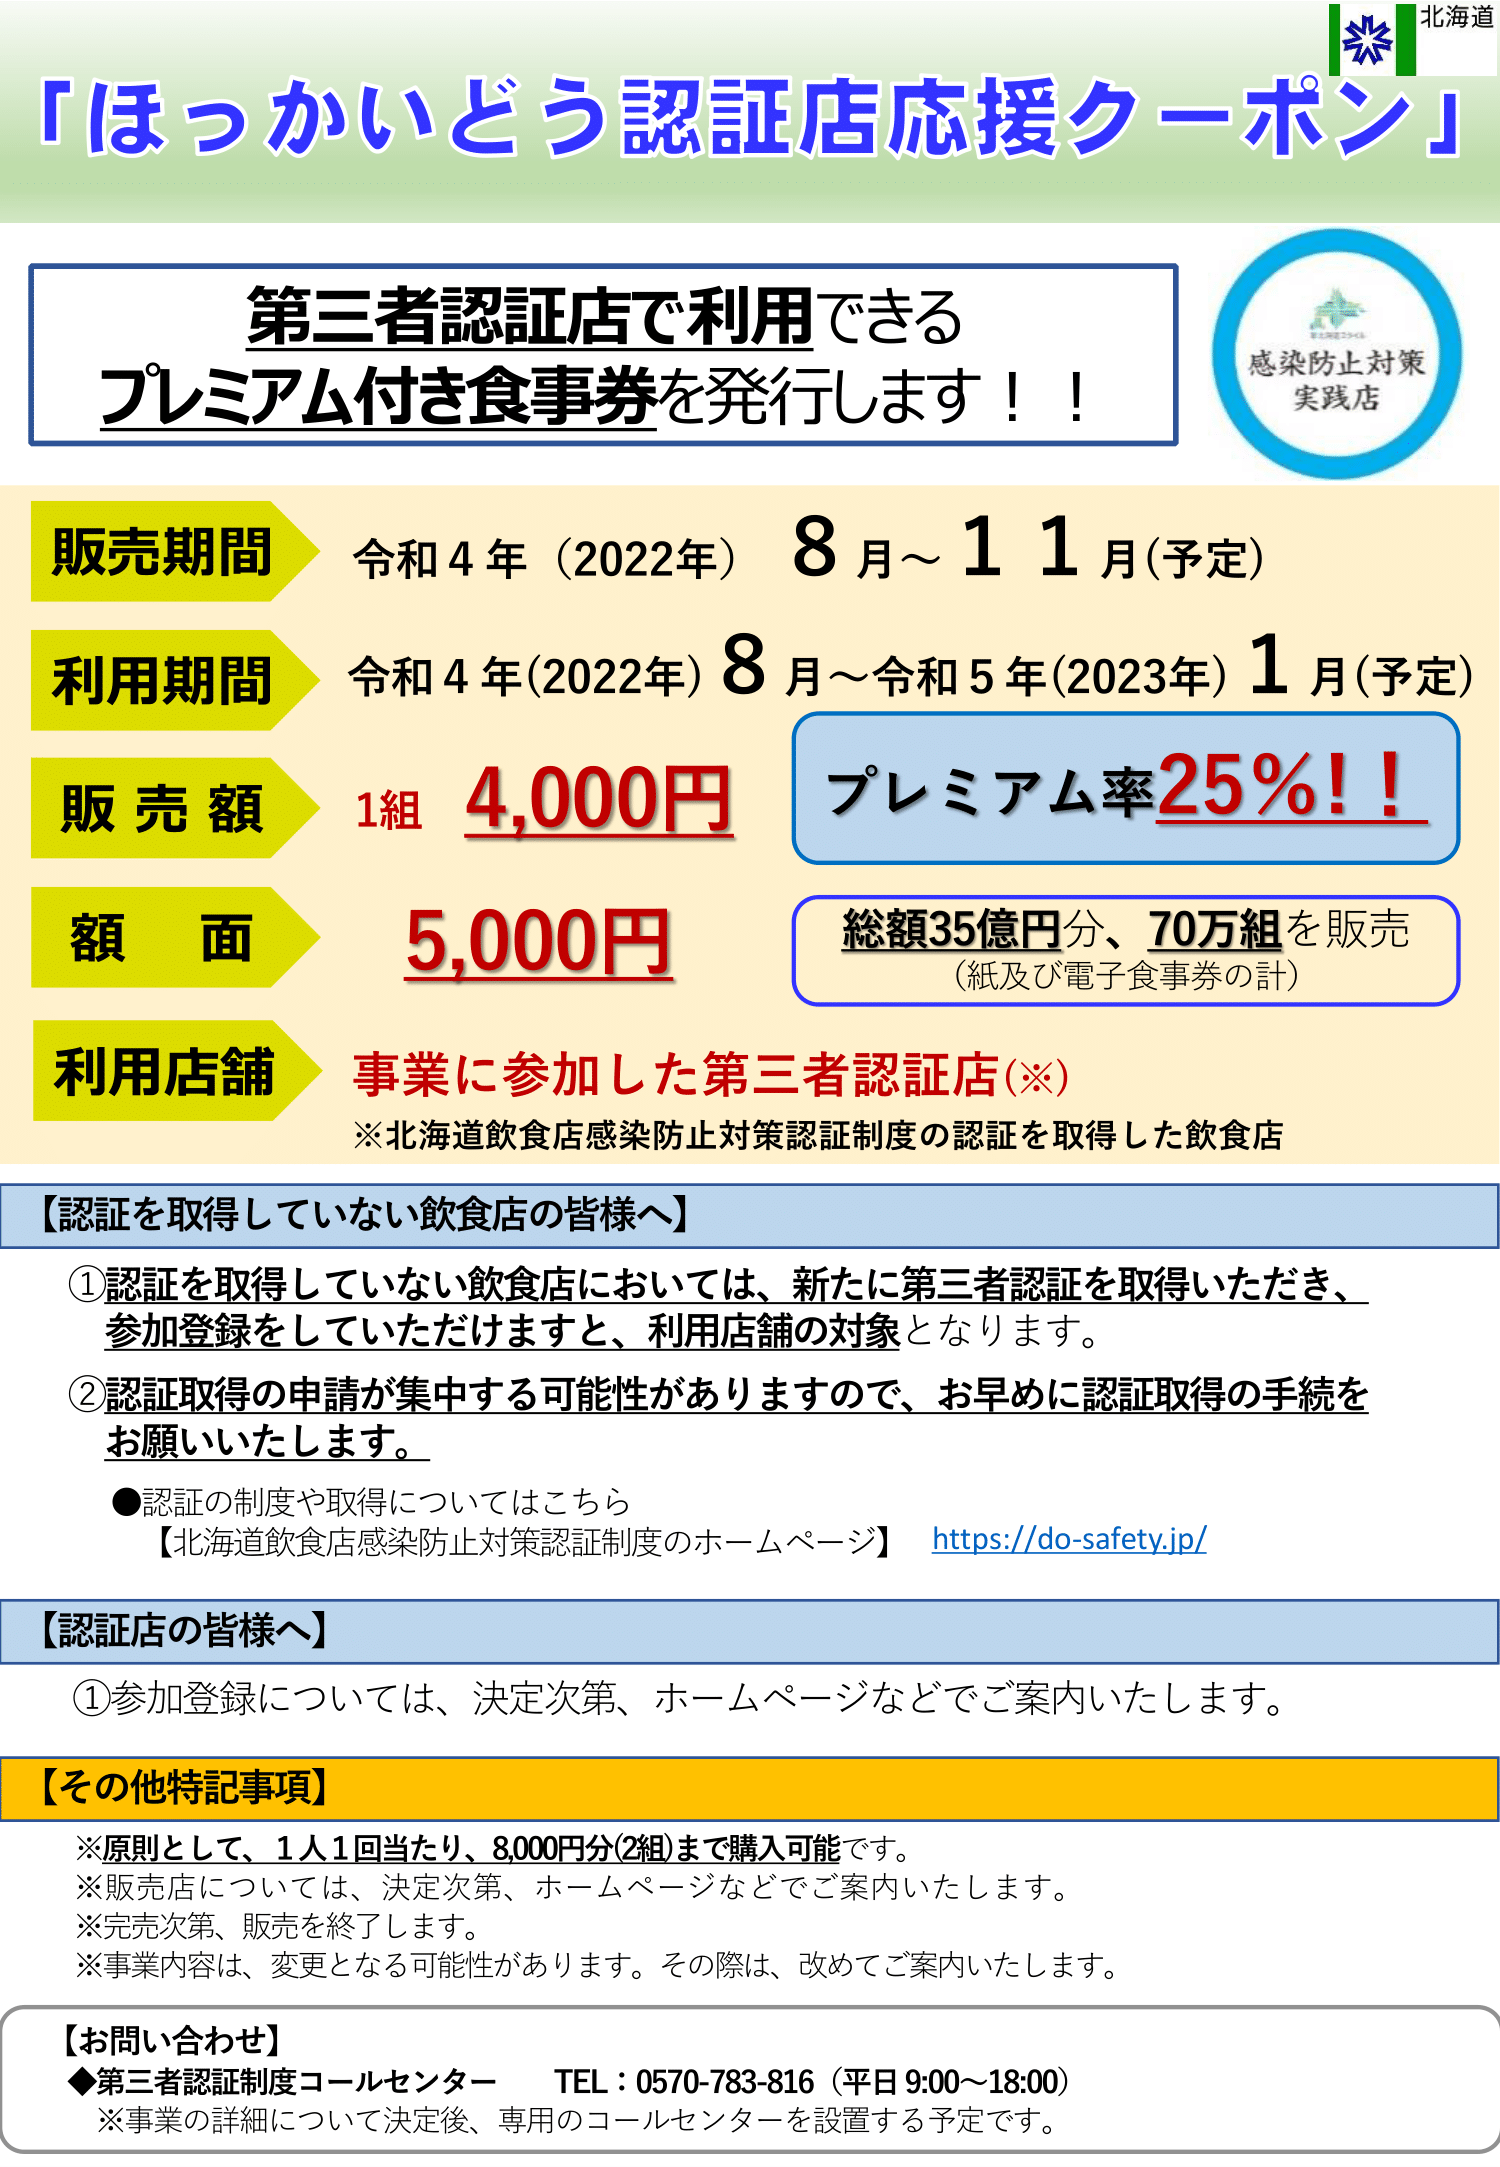 クーポンほっかいどう認証店クーポン 15000円分(1万円+5千円)